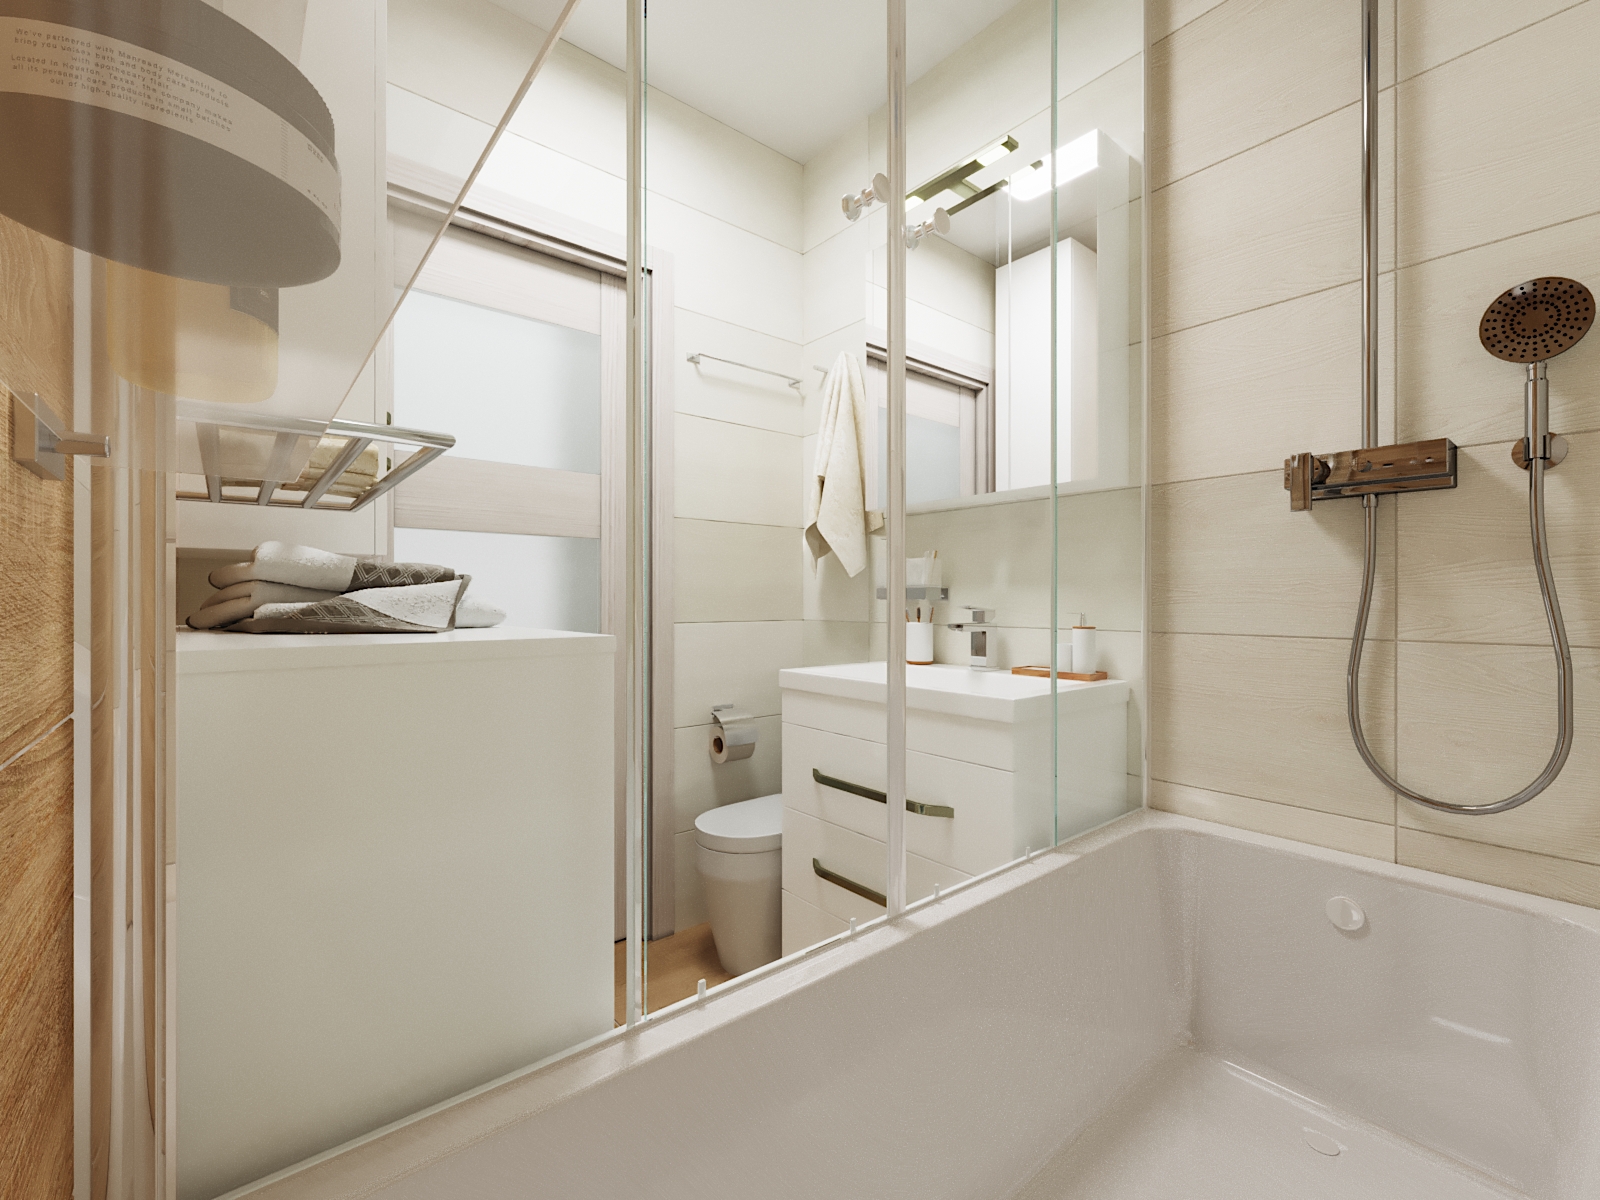 छोटा बाथरूम 3d max corona render में प्रस्तुत छवि